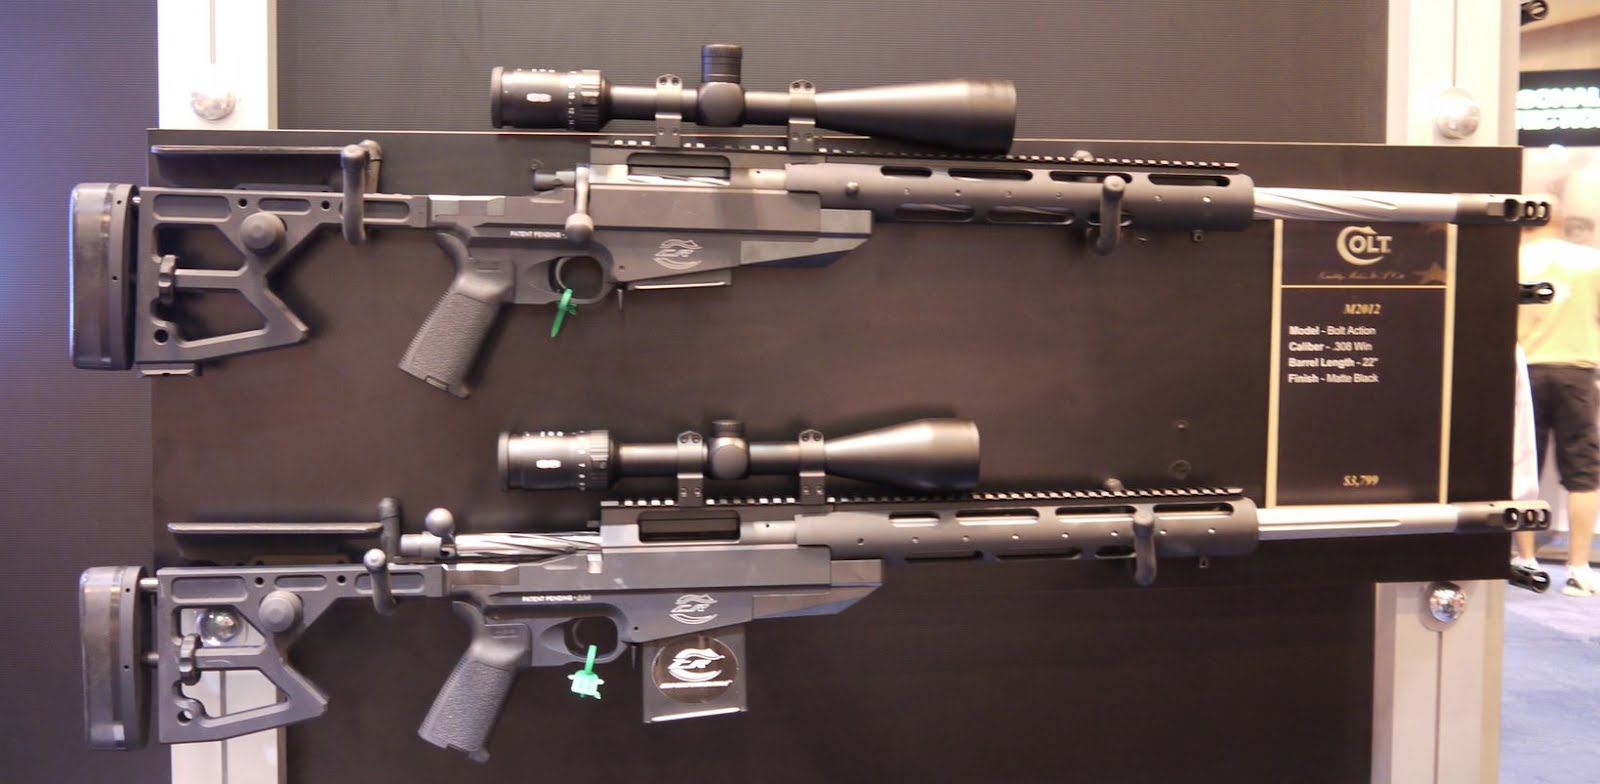 M 2012 b. Colt m2012-CLR. Снайперская винтовка Colt m2012-CLR. CLR винтовка. Винтовка Кольт м12.